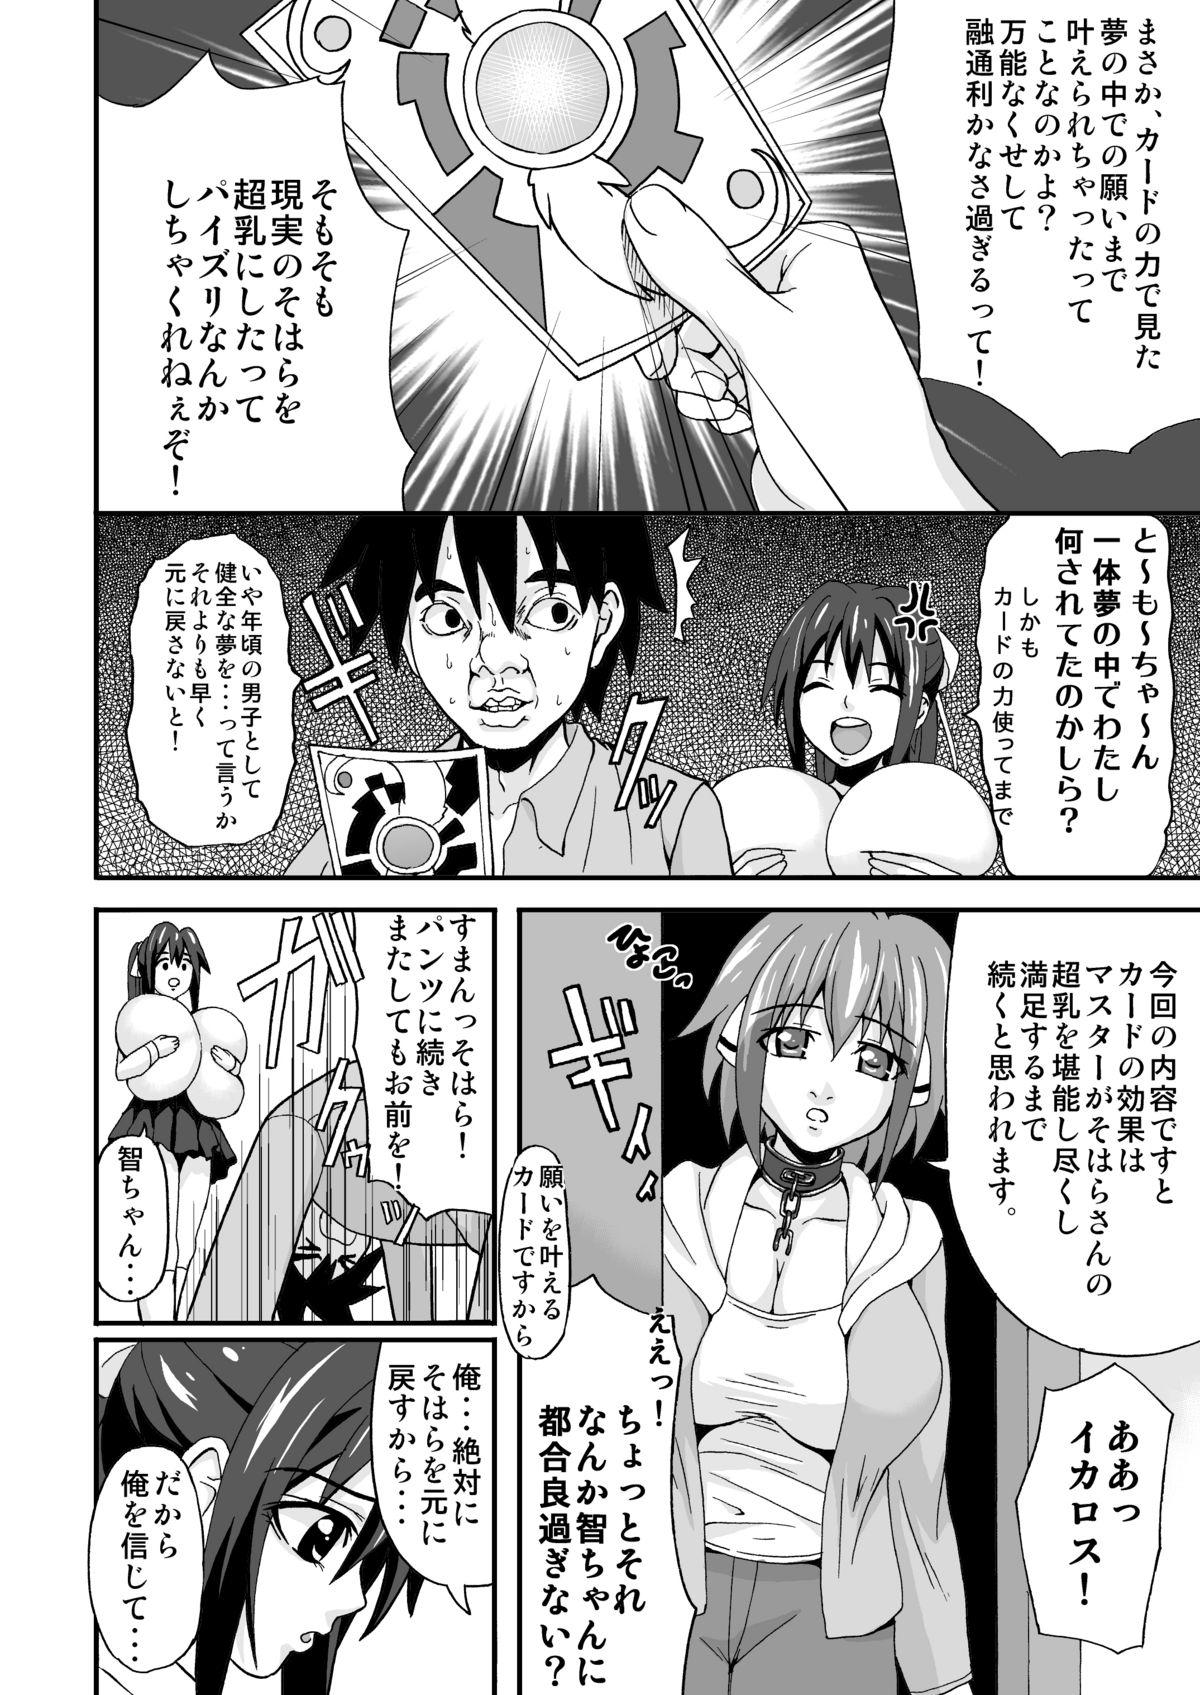 Passivo Sohara Dynamite!! - Sora no otoshimono Woman - Page 5